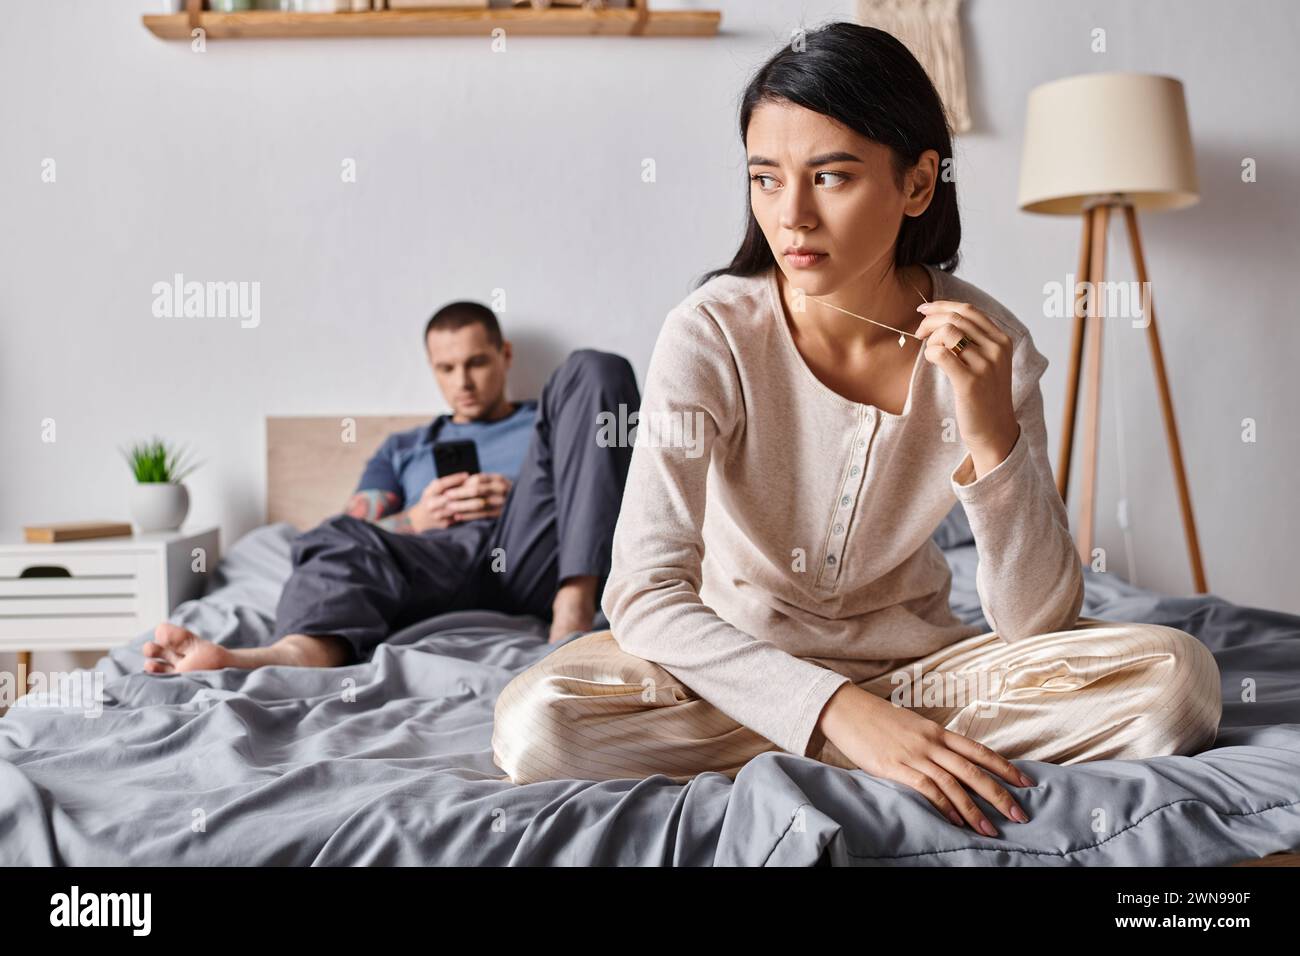 femme asiatique bouleversée assise près du mari à l'aide d'un smartphone dans la chambre à coucher à la maison, problème familial Banque D'Images